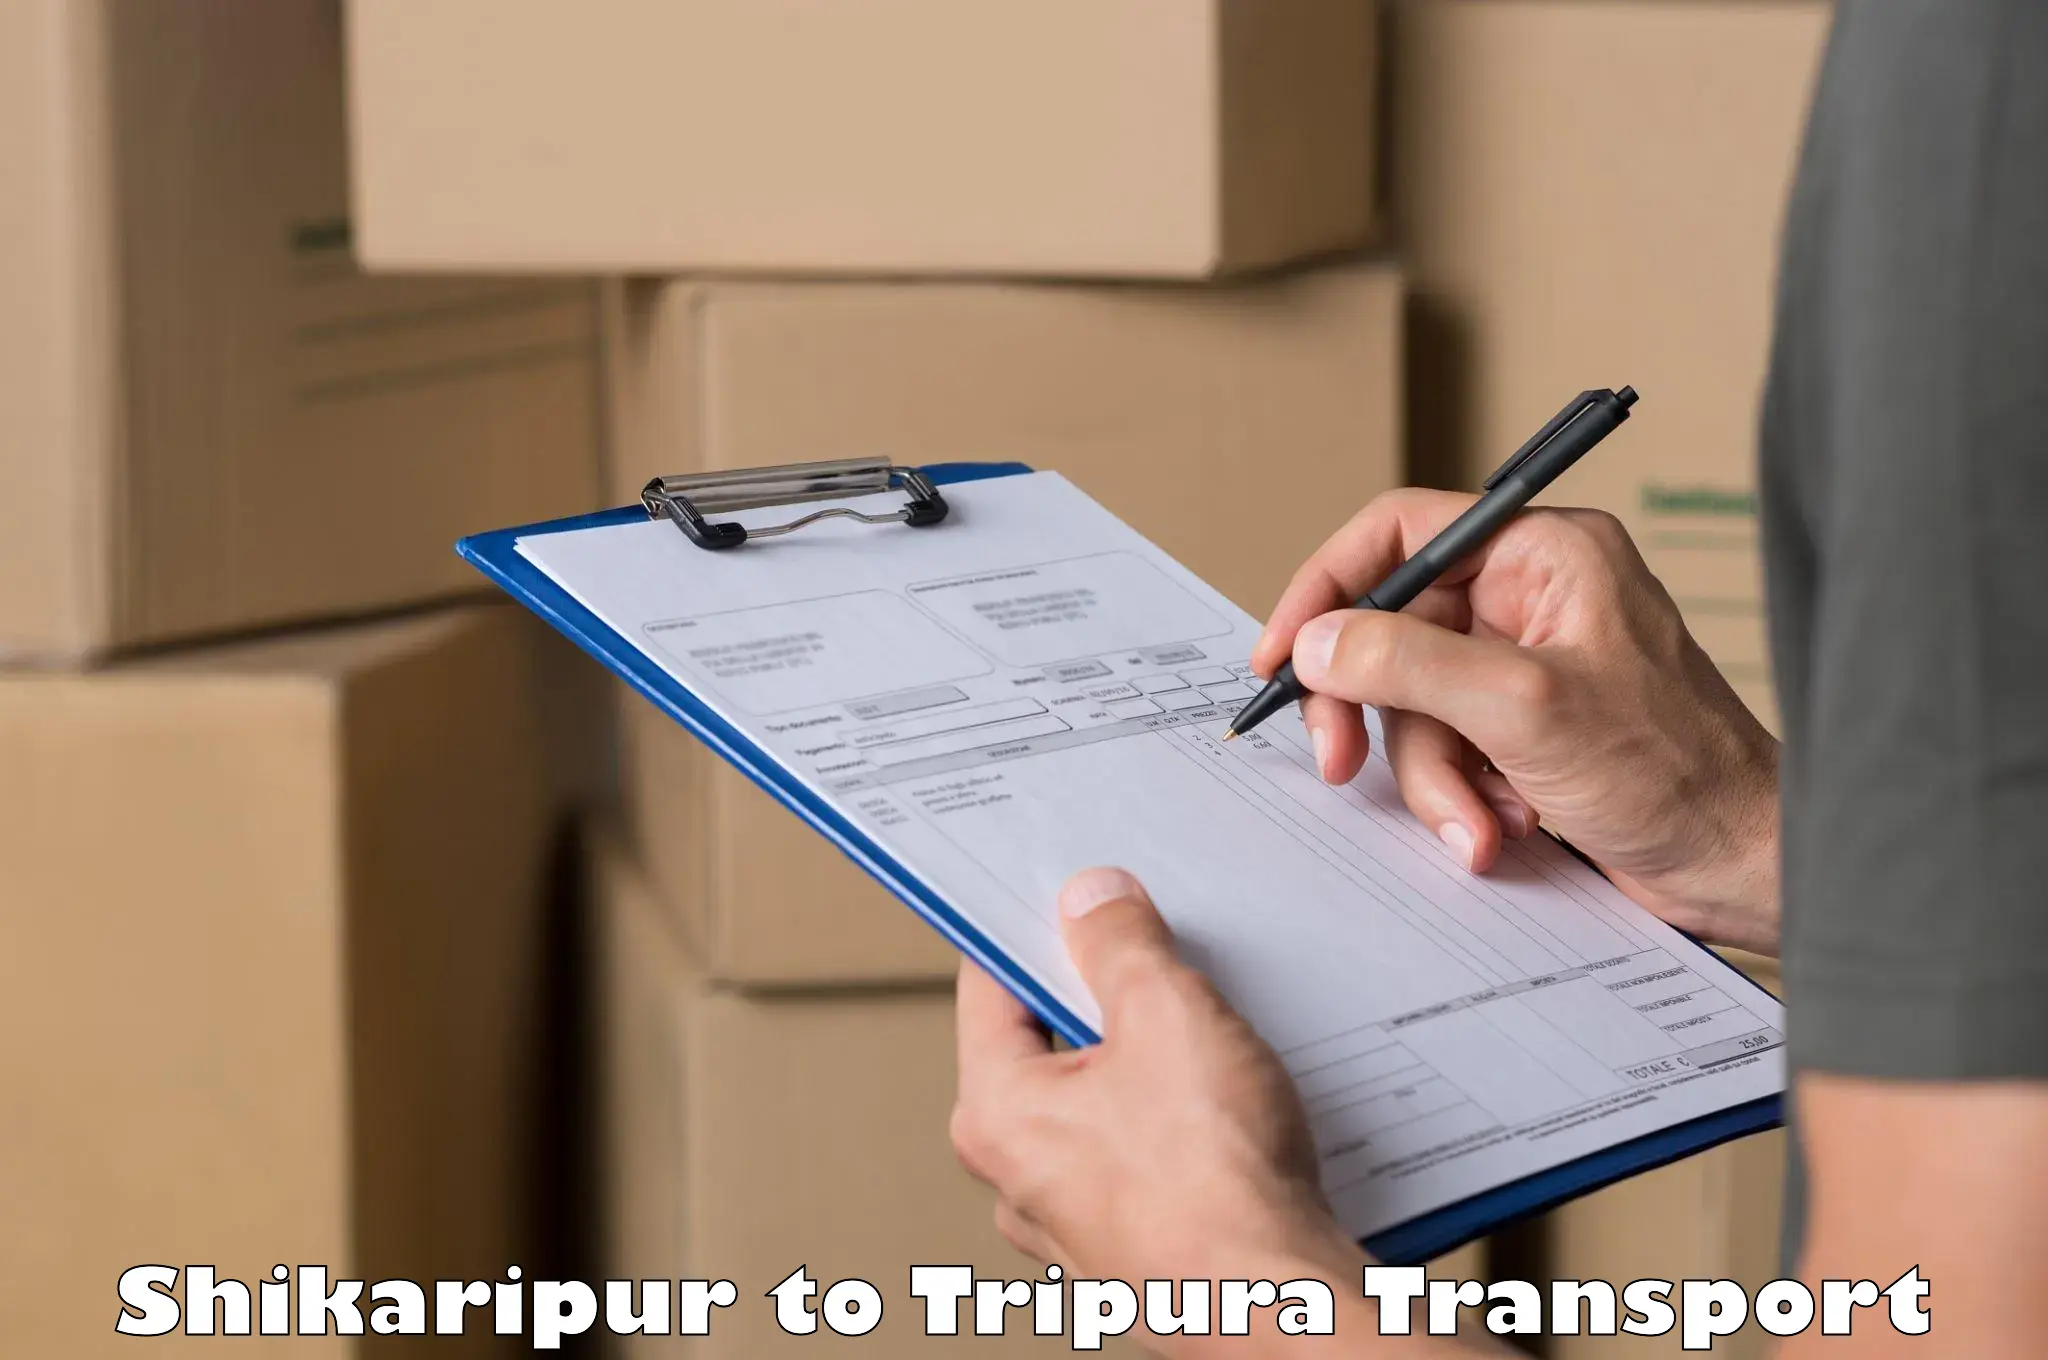 Commercial transport service Shikaripur to Tripura